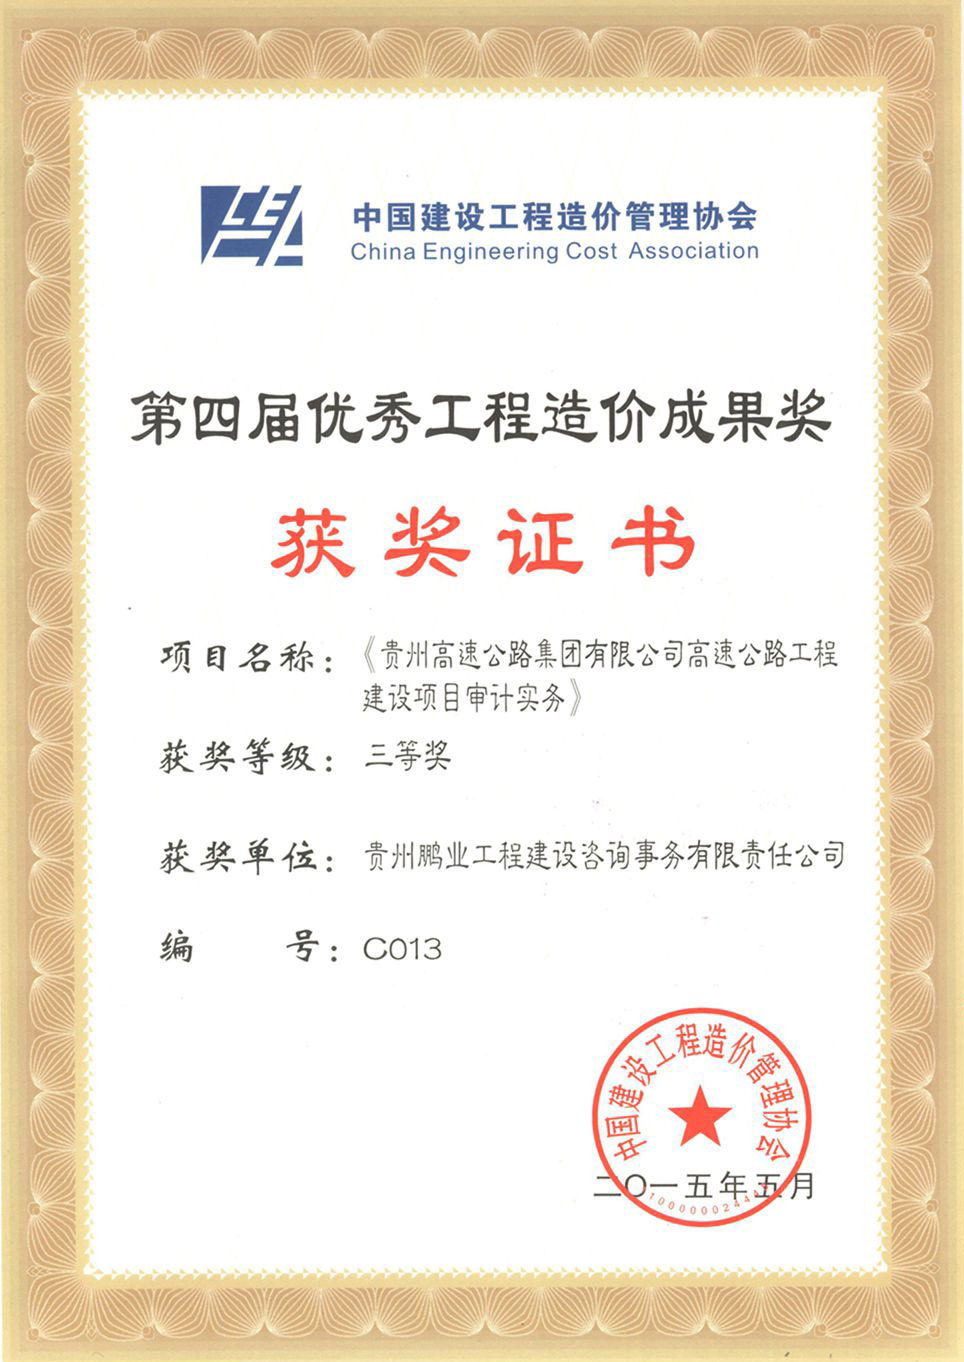 获得中国工程造价协会颁发的第四届工程造价优秀成果三等奖